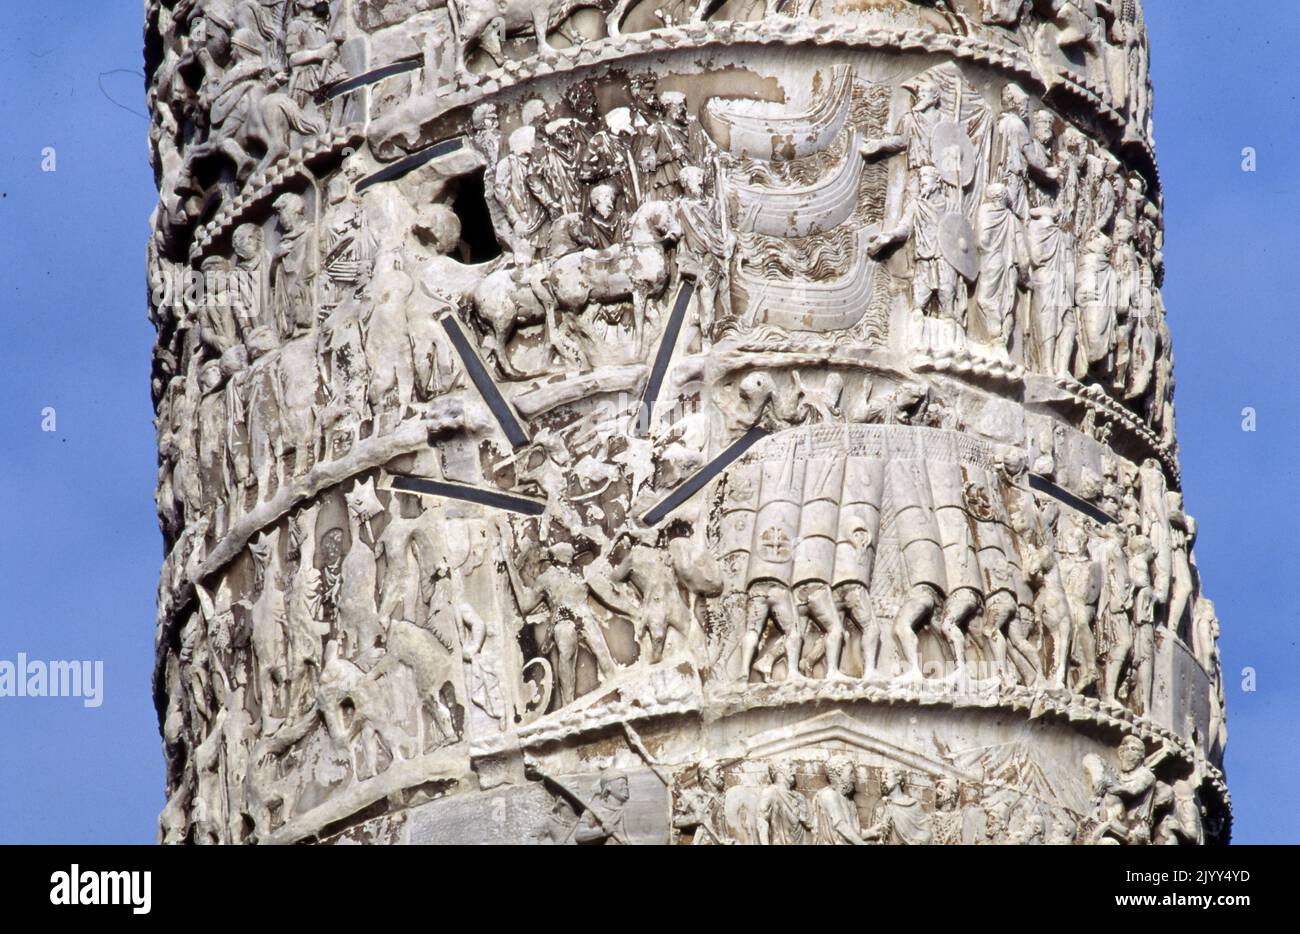 La colonne de Marcus Aurelius; une colonne de victoire romaine sur la Piazza Colonna, Rome, Italie. C'est une colonne dorique avec un relief en spirale: Elle a été construite en l'honneur de l'empereur romain Marcus Aurelius et modélisée sur la colonne de Trajan. Une inscription trouvée dans les environs atteste que la colonne a été achevée en 193. Banque D'Images